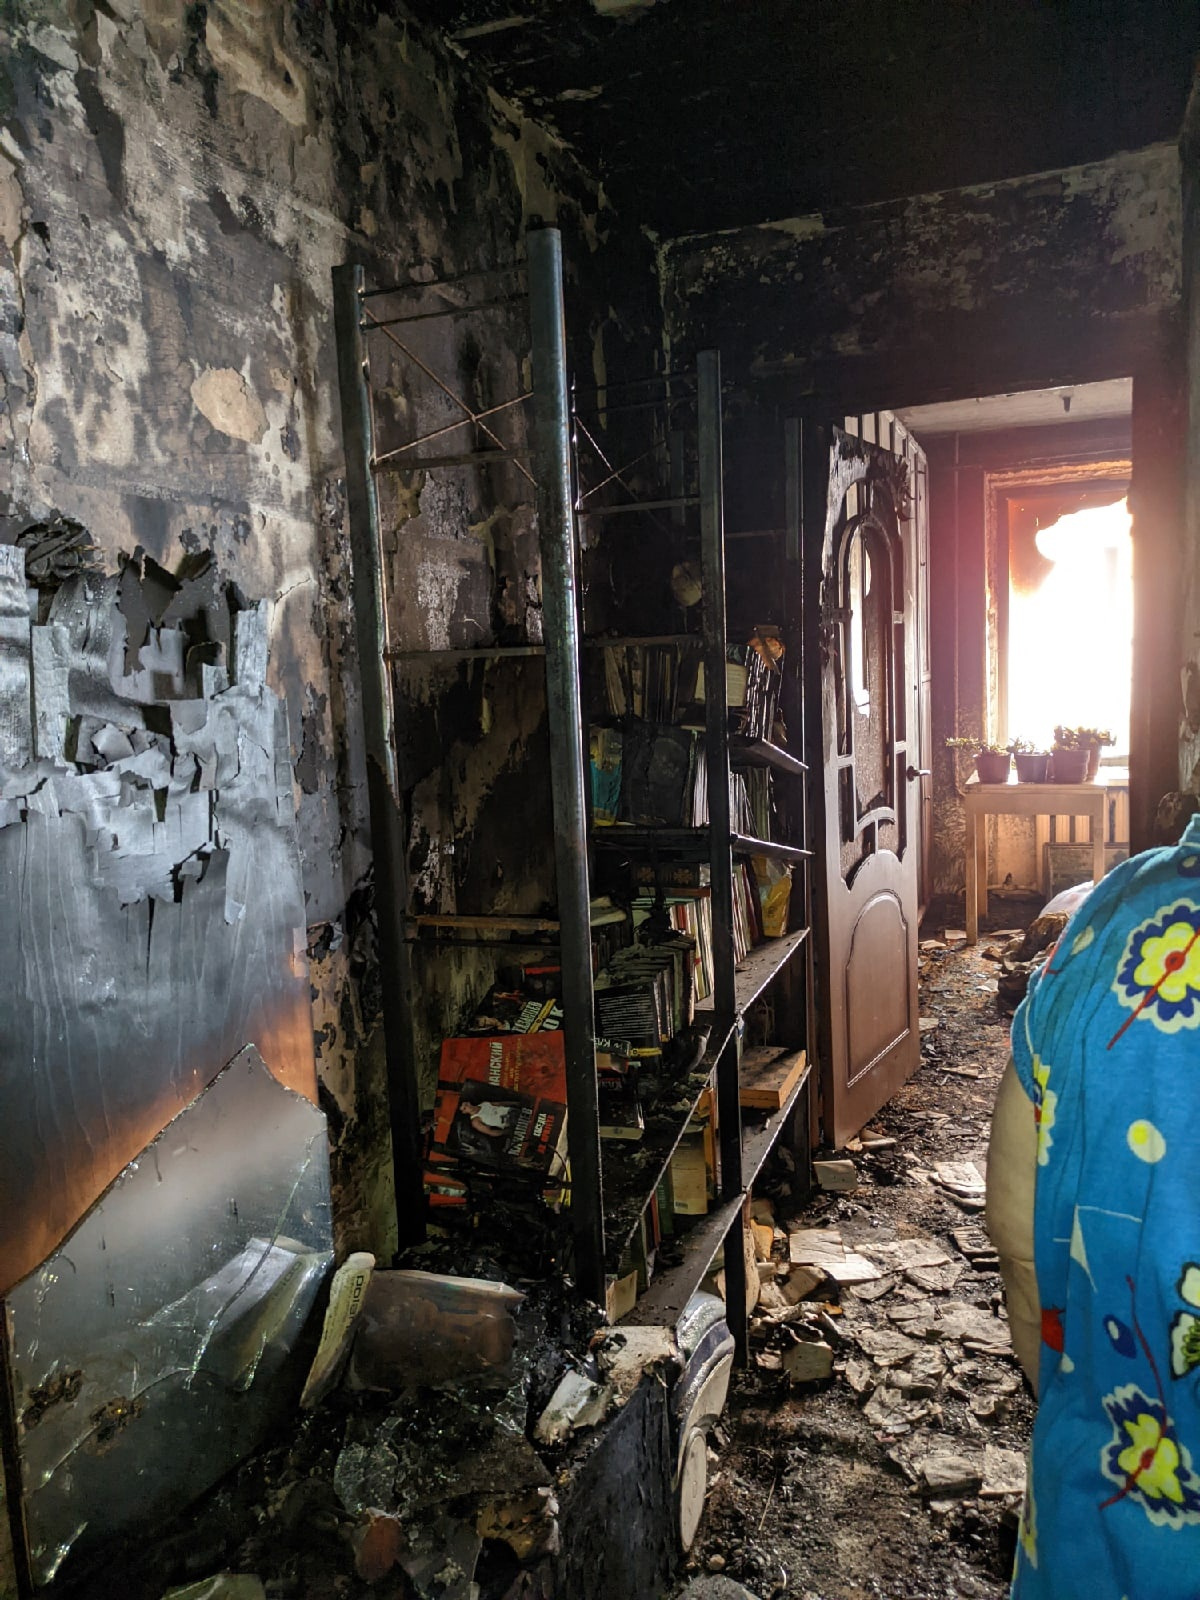 В пожаре пенсионерка не пострадала, вышла из дома в чем была — в старом домашнем халате и тапочках